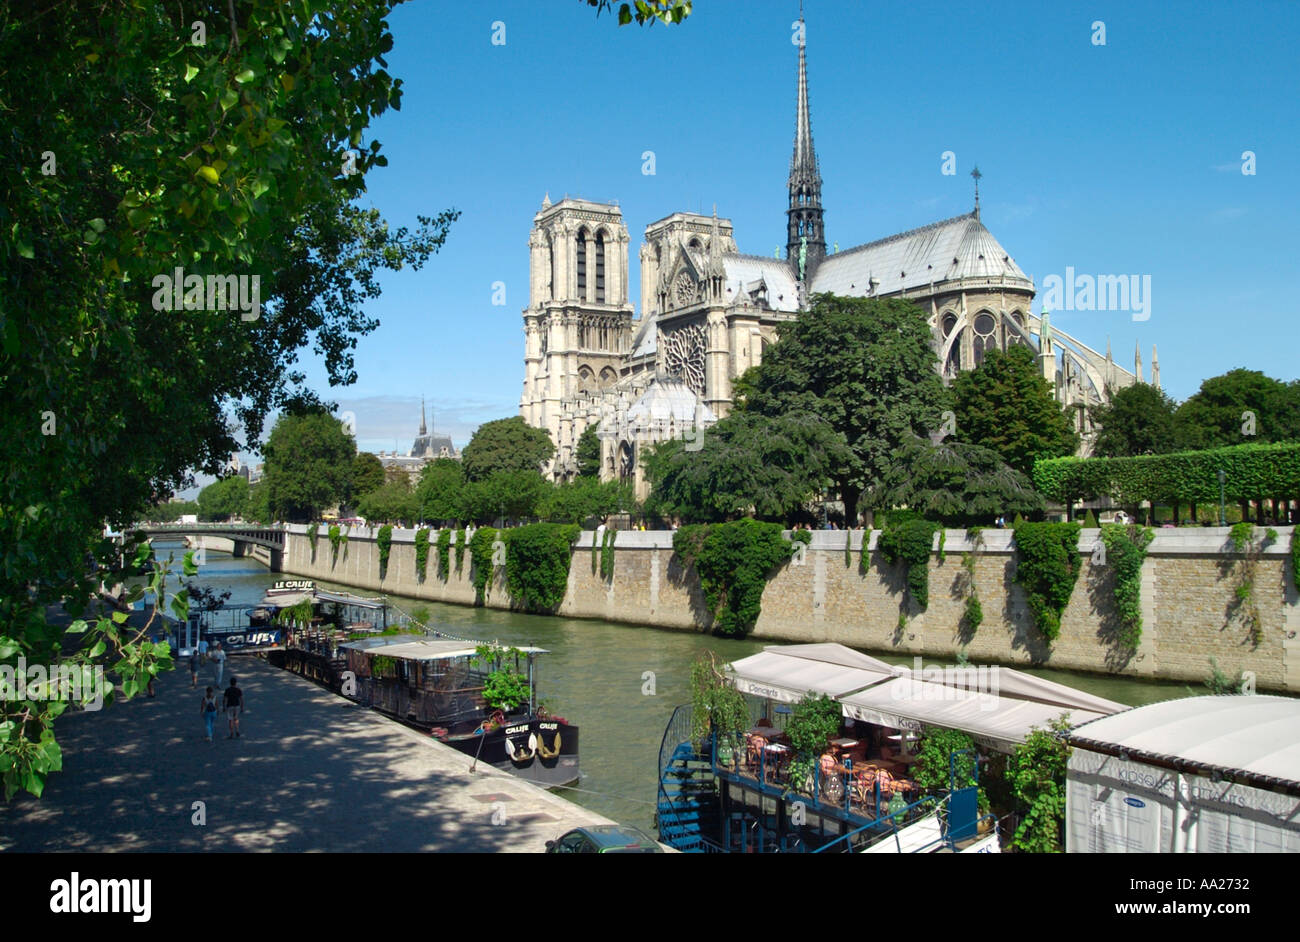 Notre Dame Cathedral and the River Seine, Île de la Cité, Paris, France Stock Photo